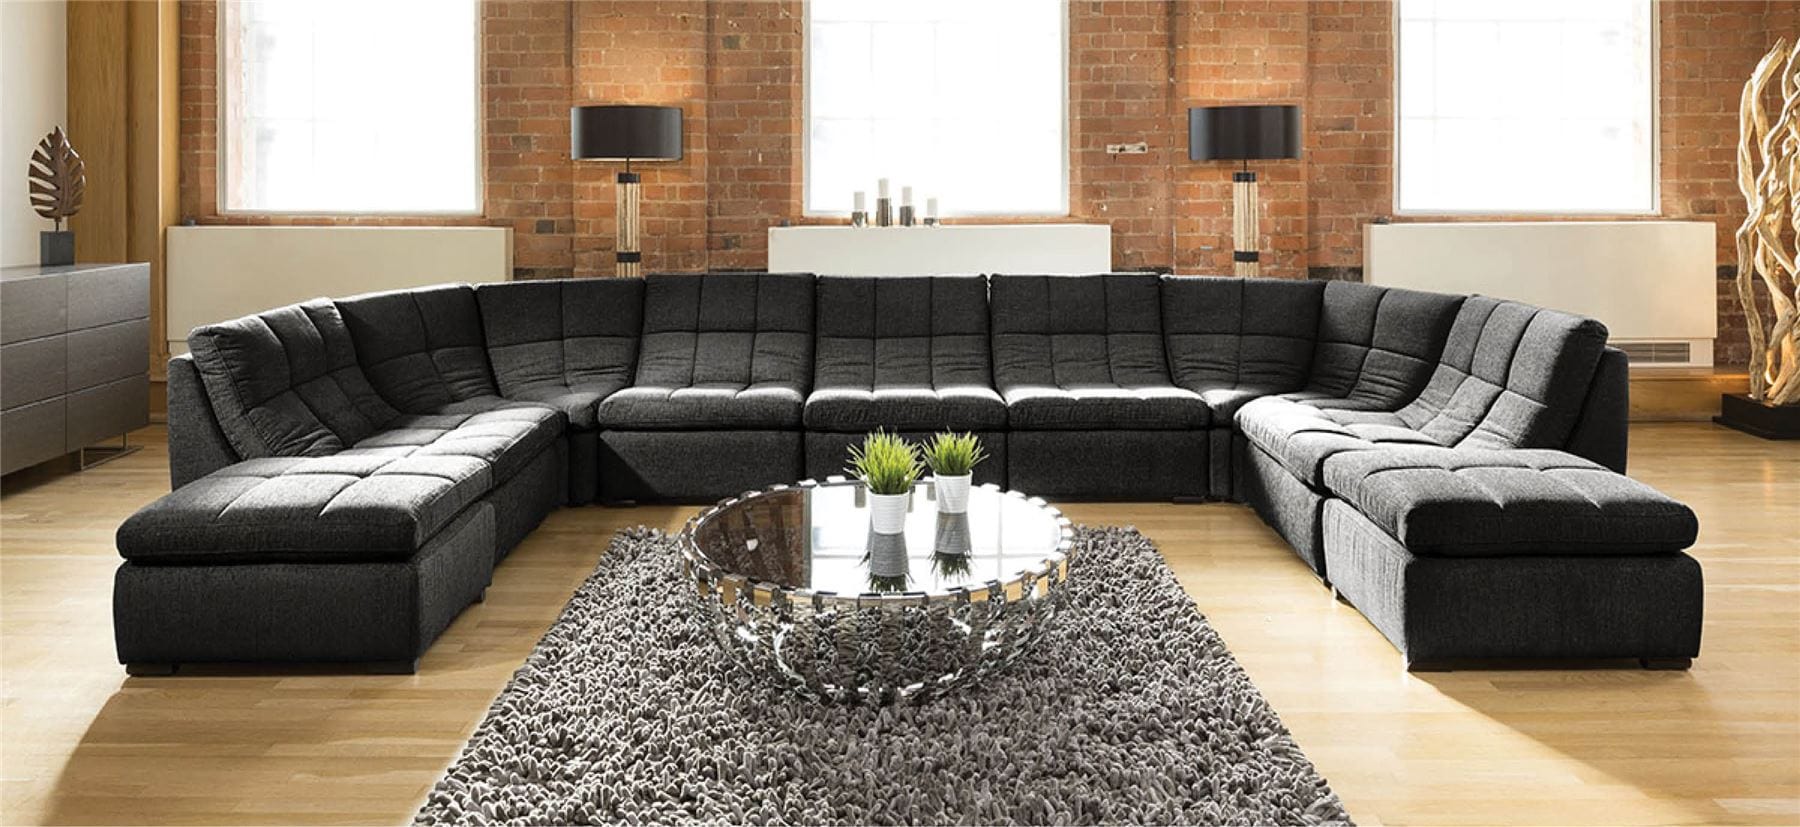 Quatropi Quatropi Designer Relax Range U Shaped Sofa Luxury 9 Seater U2